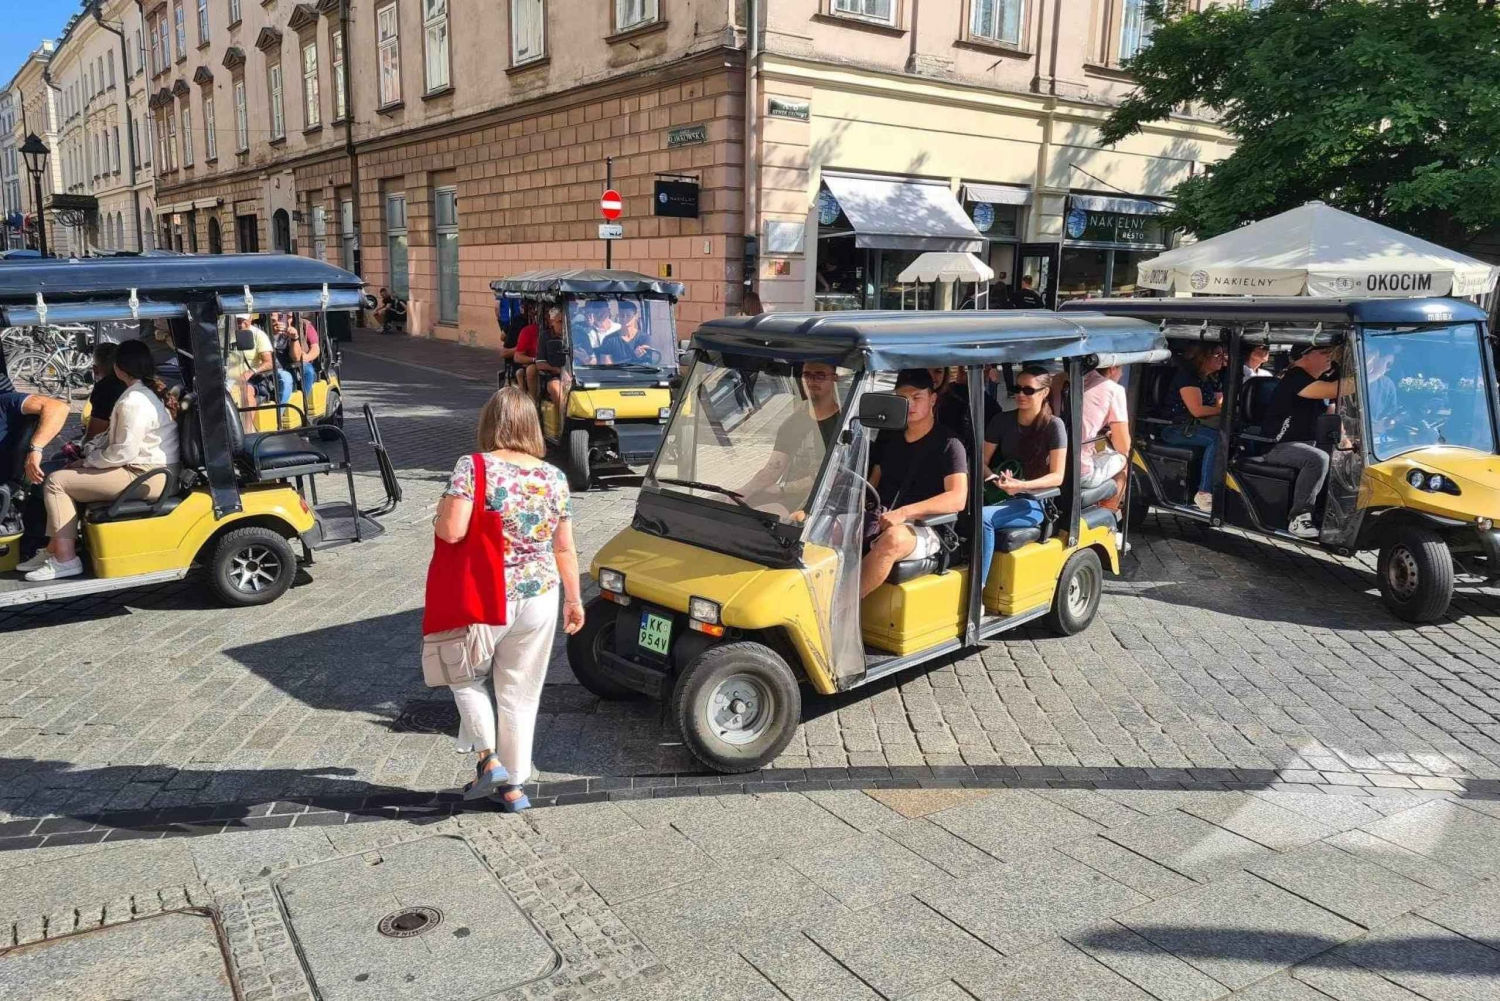 Yksityinen Krakovan vanhankaupungin golfkärrykierros audio-oppaan kanssa